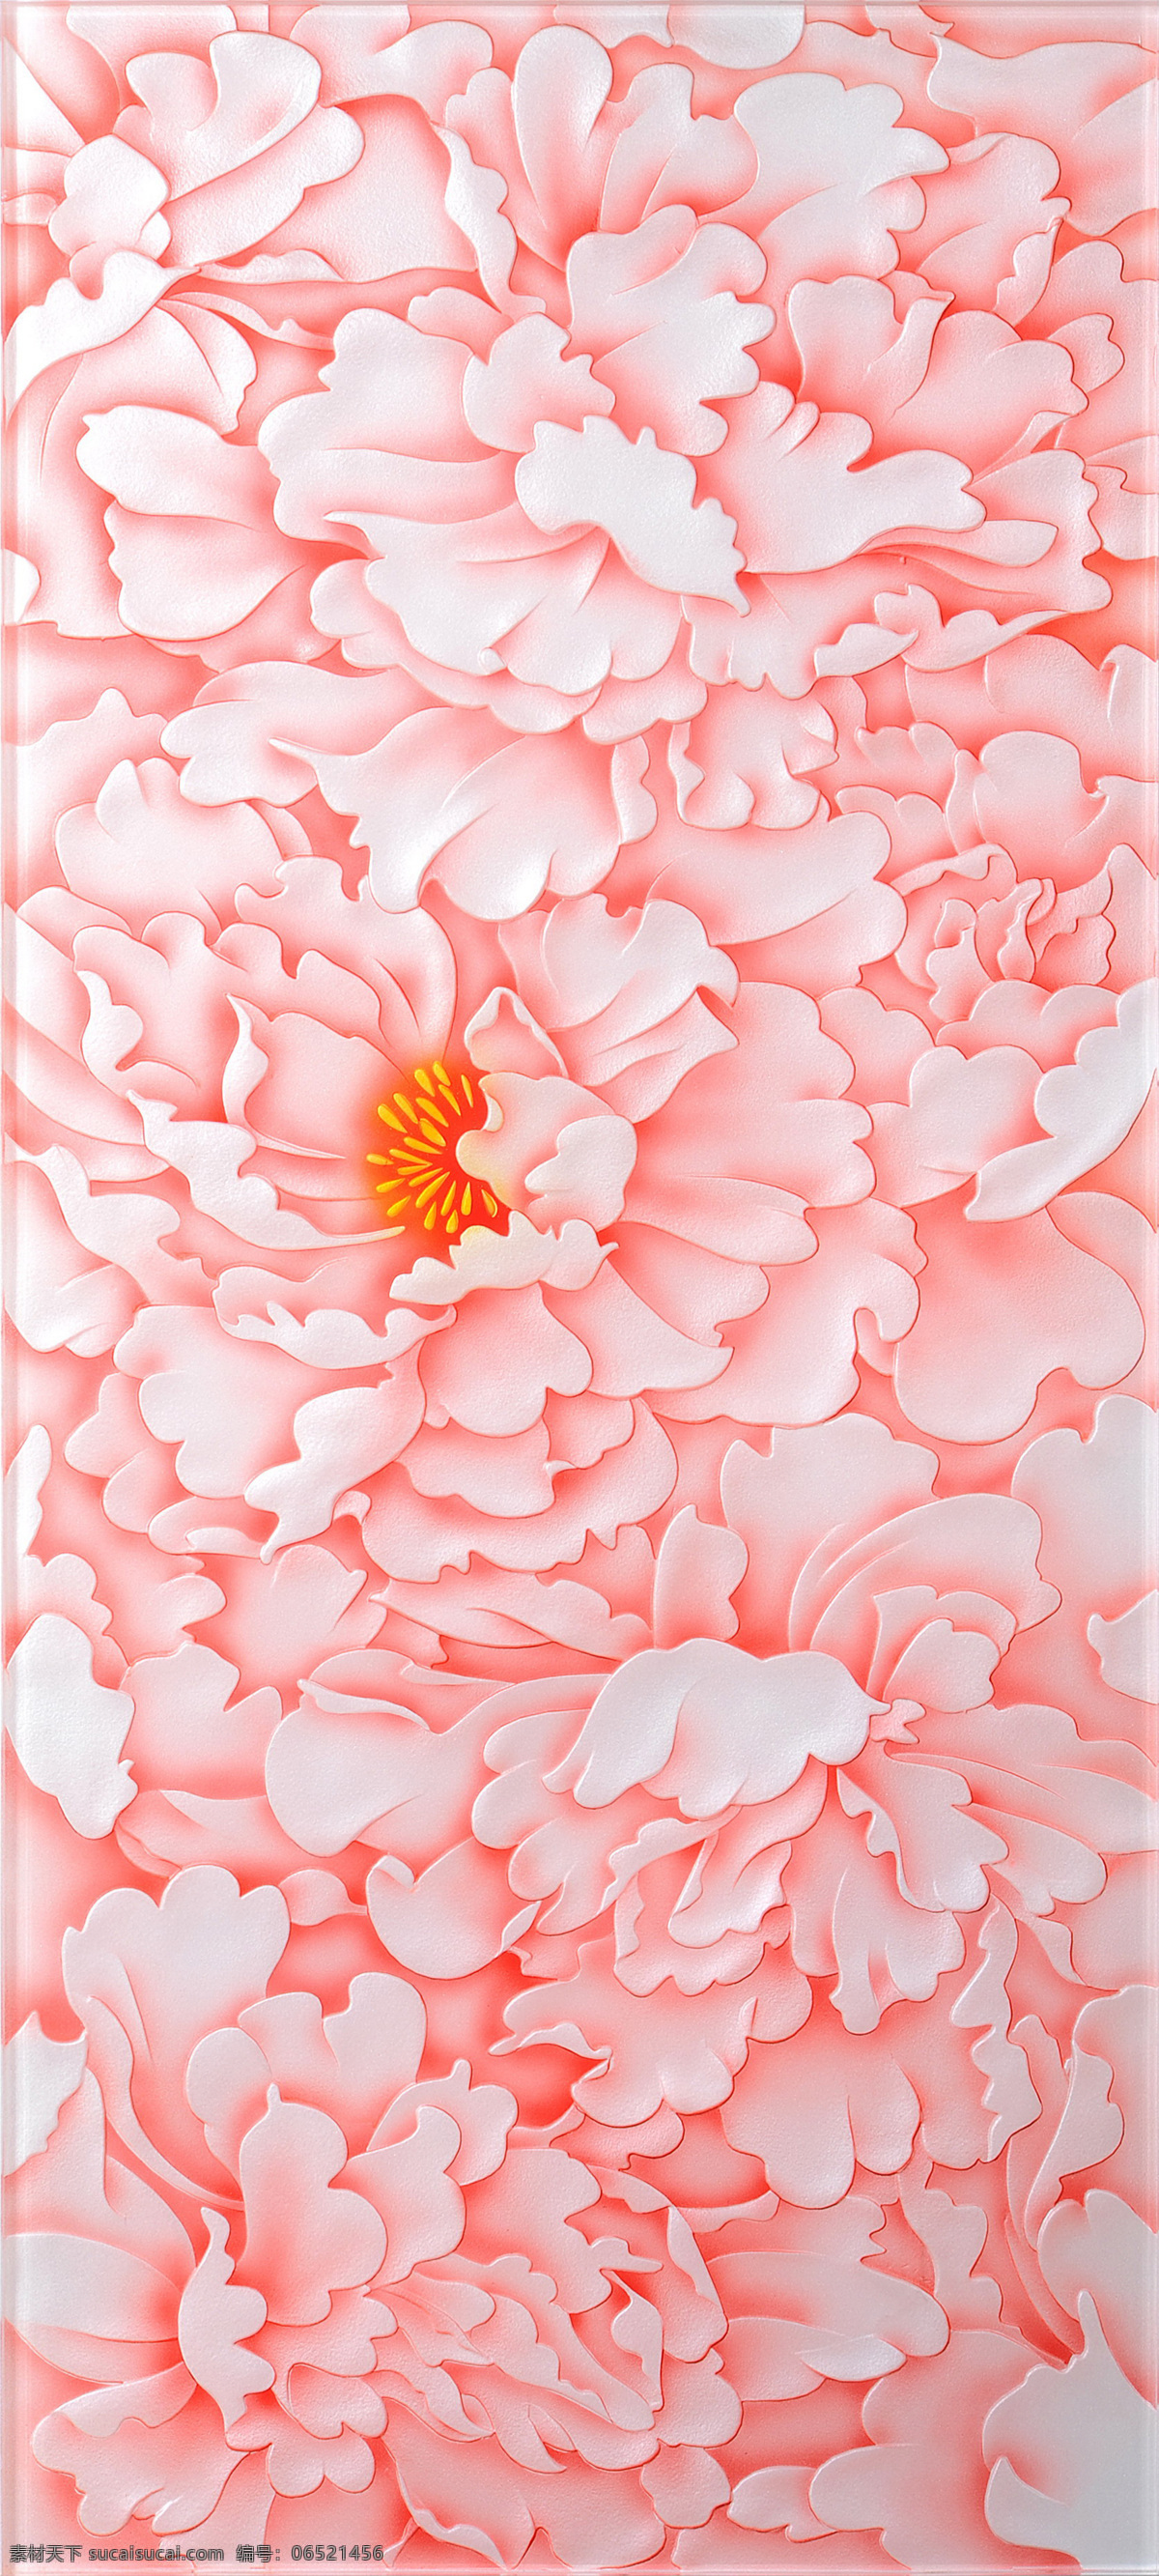 牡丹浮雕 粉色牡丹 红色浮雕 牡丹素材 金色 浮雕 牡丹 花卉 彩色 底纹边框 移门图案